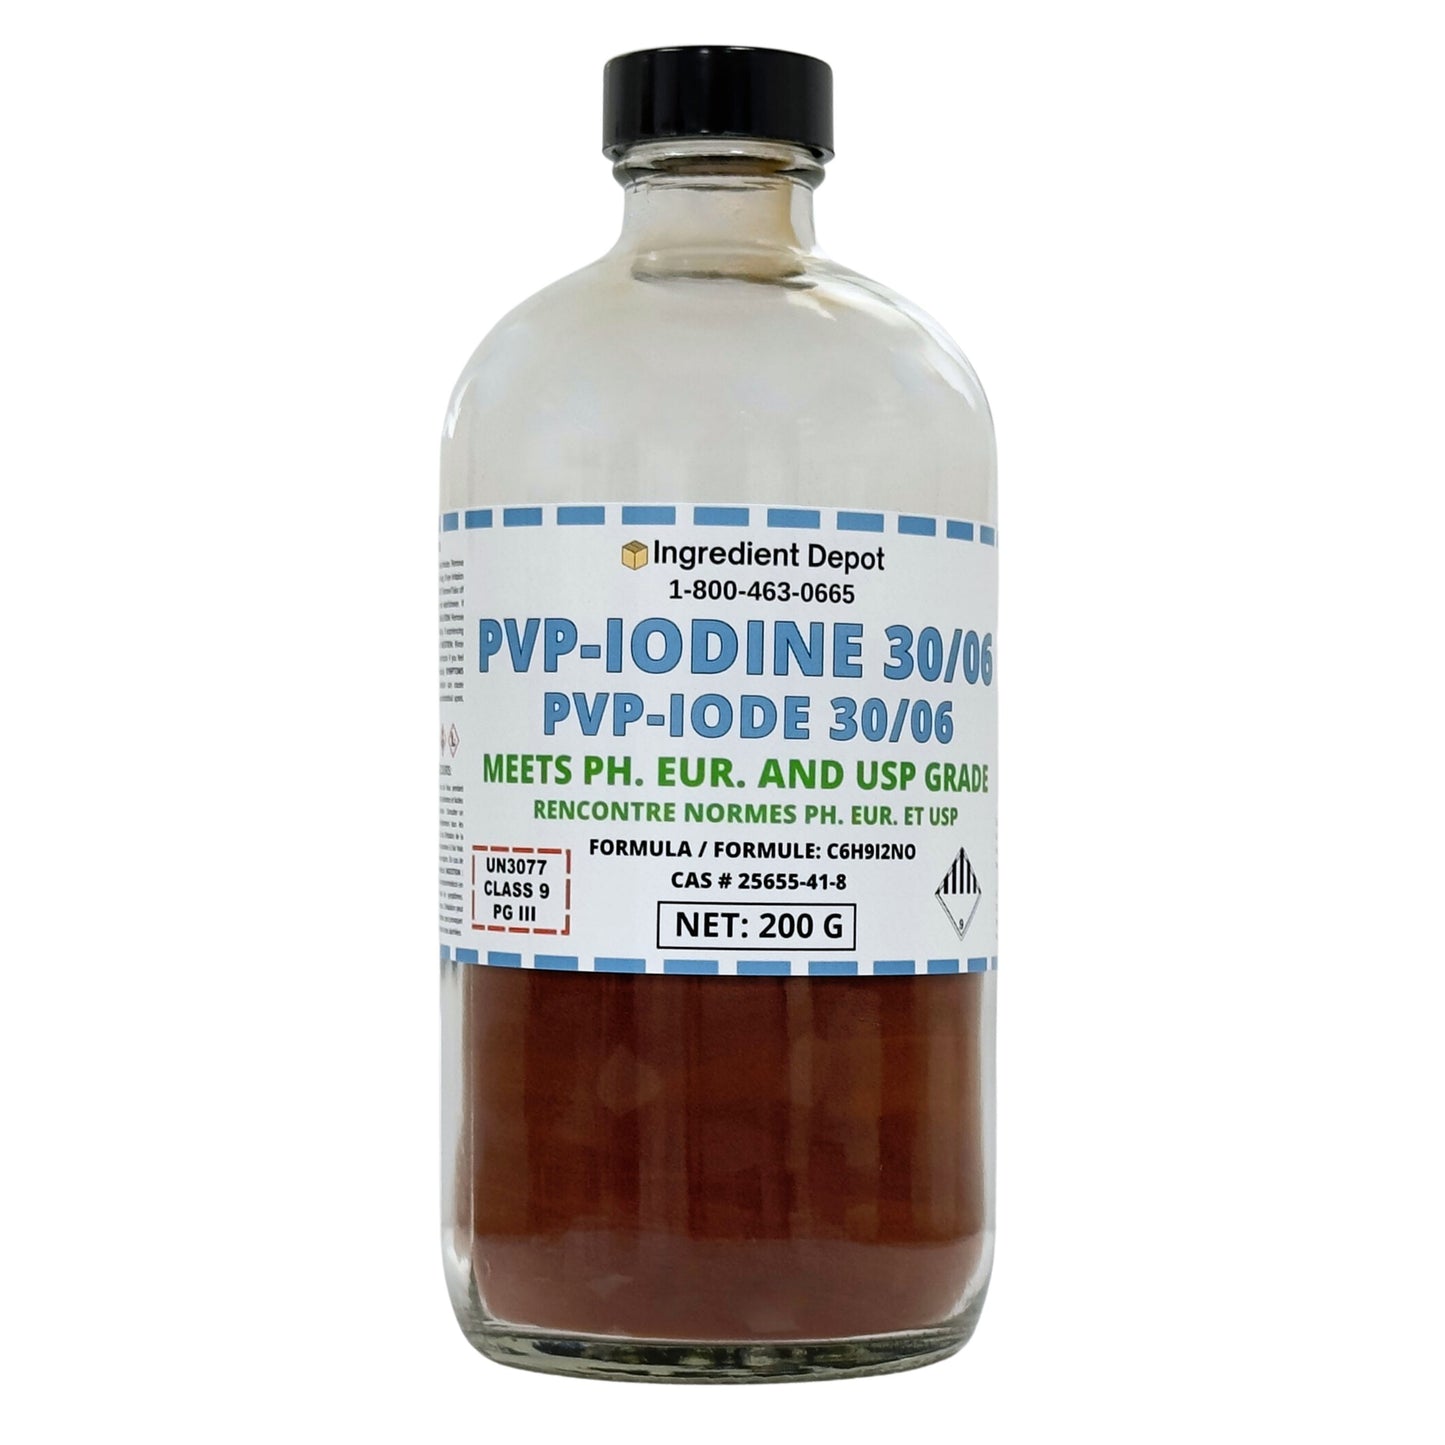 PVP-Iodine 30/06 (PVP-I, Povidone-Iodine) 200g - IngredientDepot.com